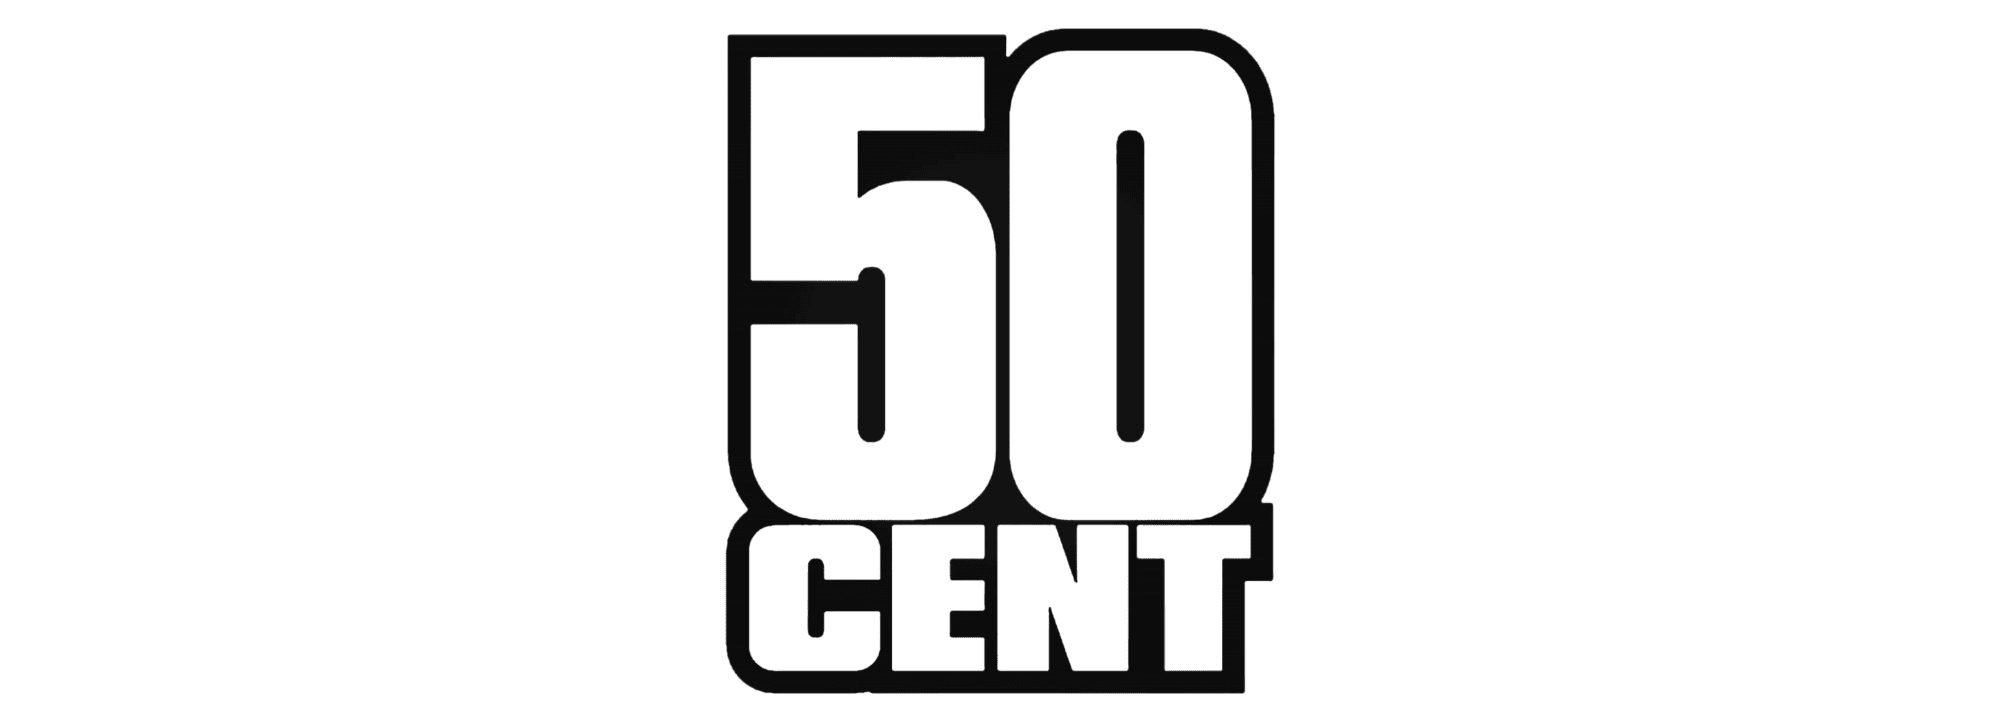 50 Cent Audio Video Invasion